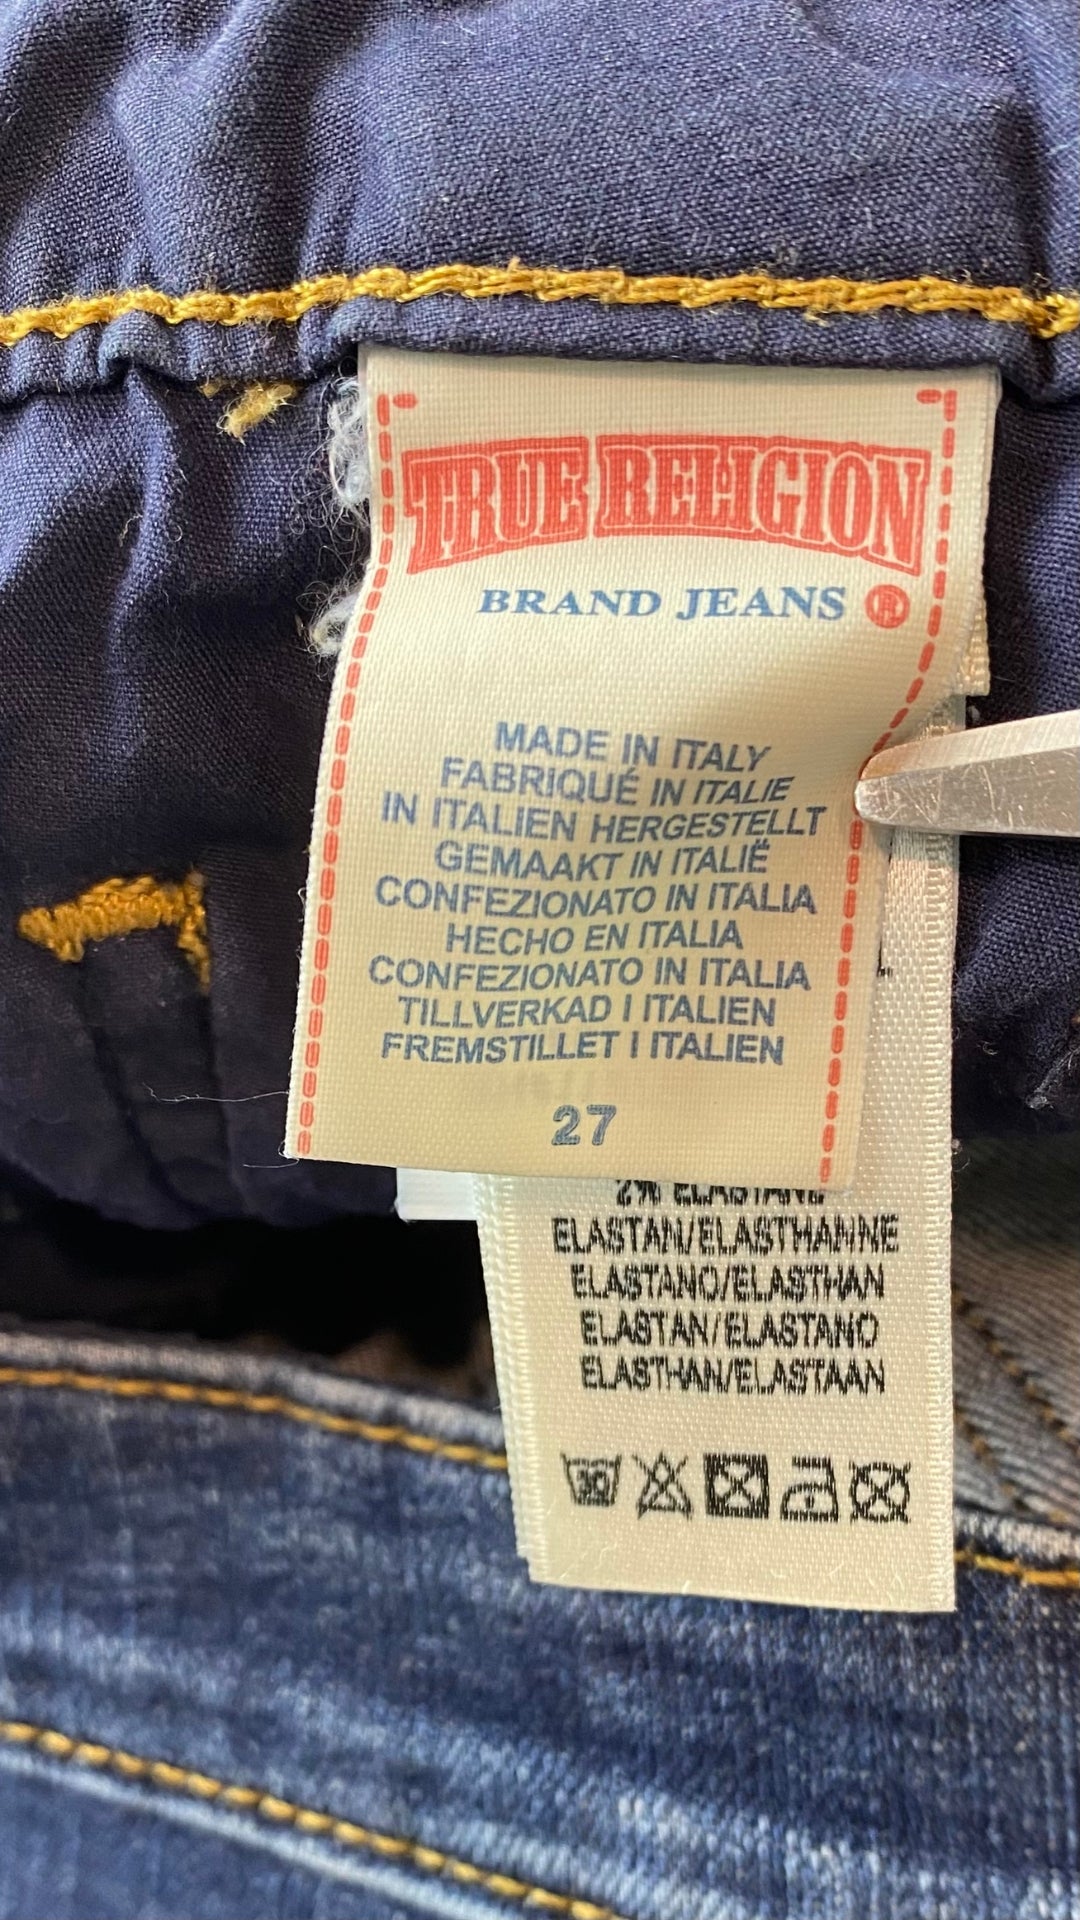 Jeans foncé à jambe étroite, True Religion, taille 27. Vue de l'étiquette de marque et taille.